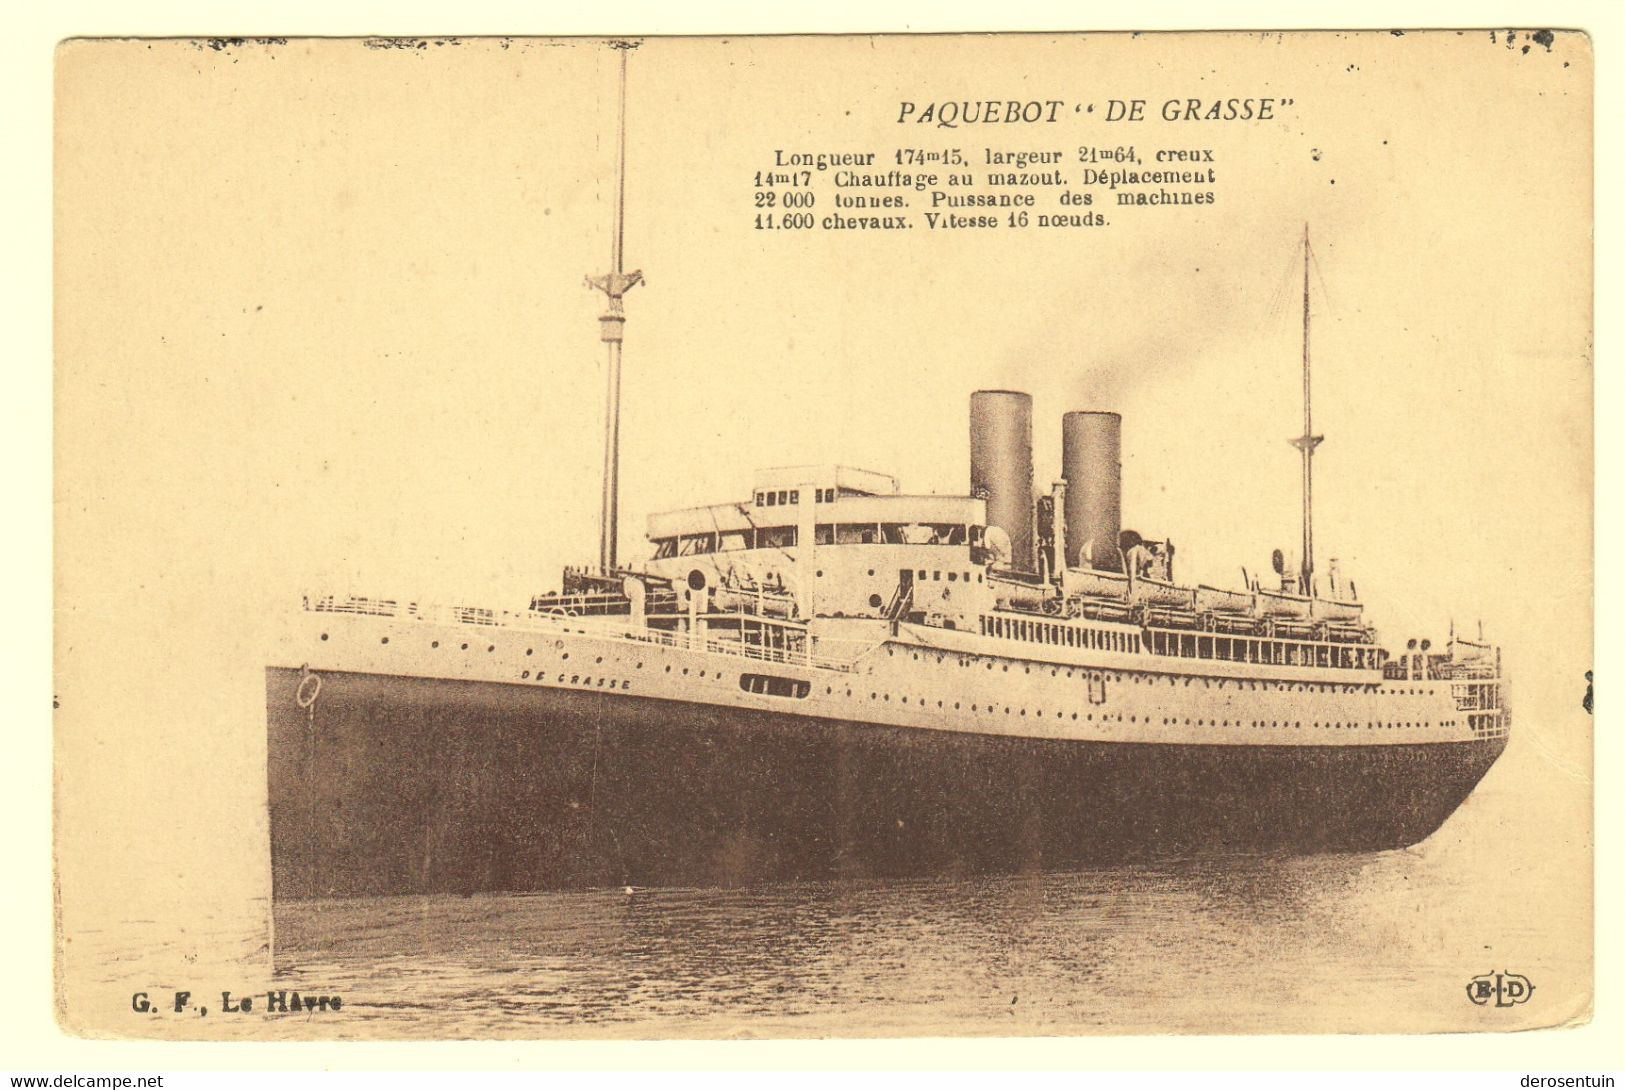 a0128	[Postkaarten] Passagiersschepen (paquebots bateaux schepen boten, varia, allerlei). - Lot van 43 postkaarten